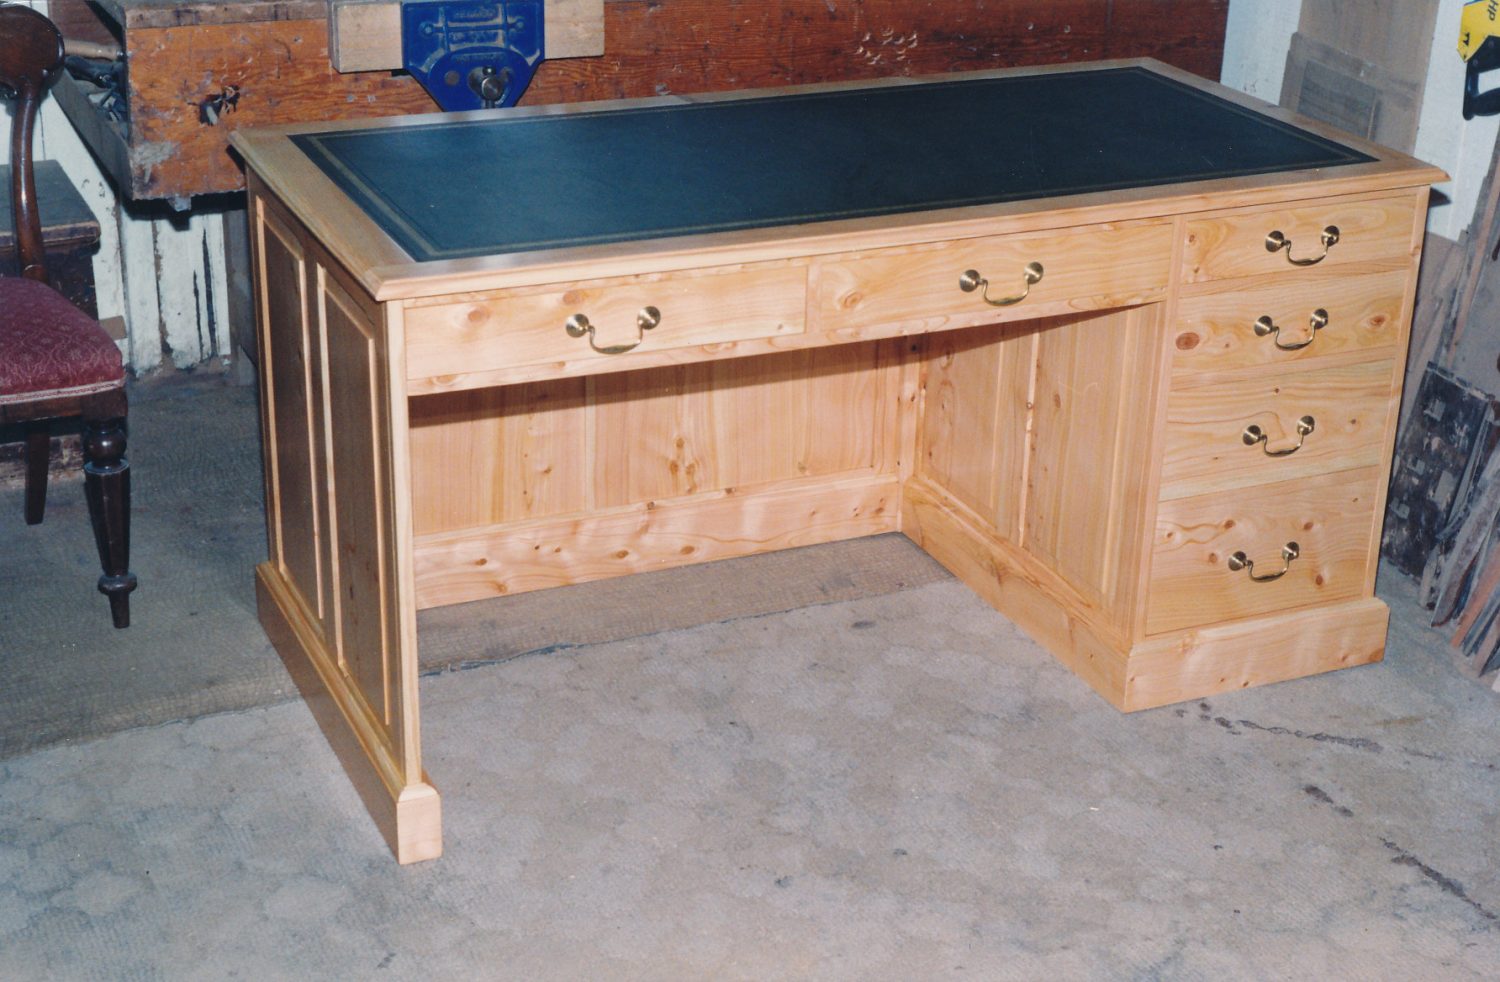 Monterey Pine Desk with one Pedestal